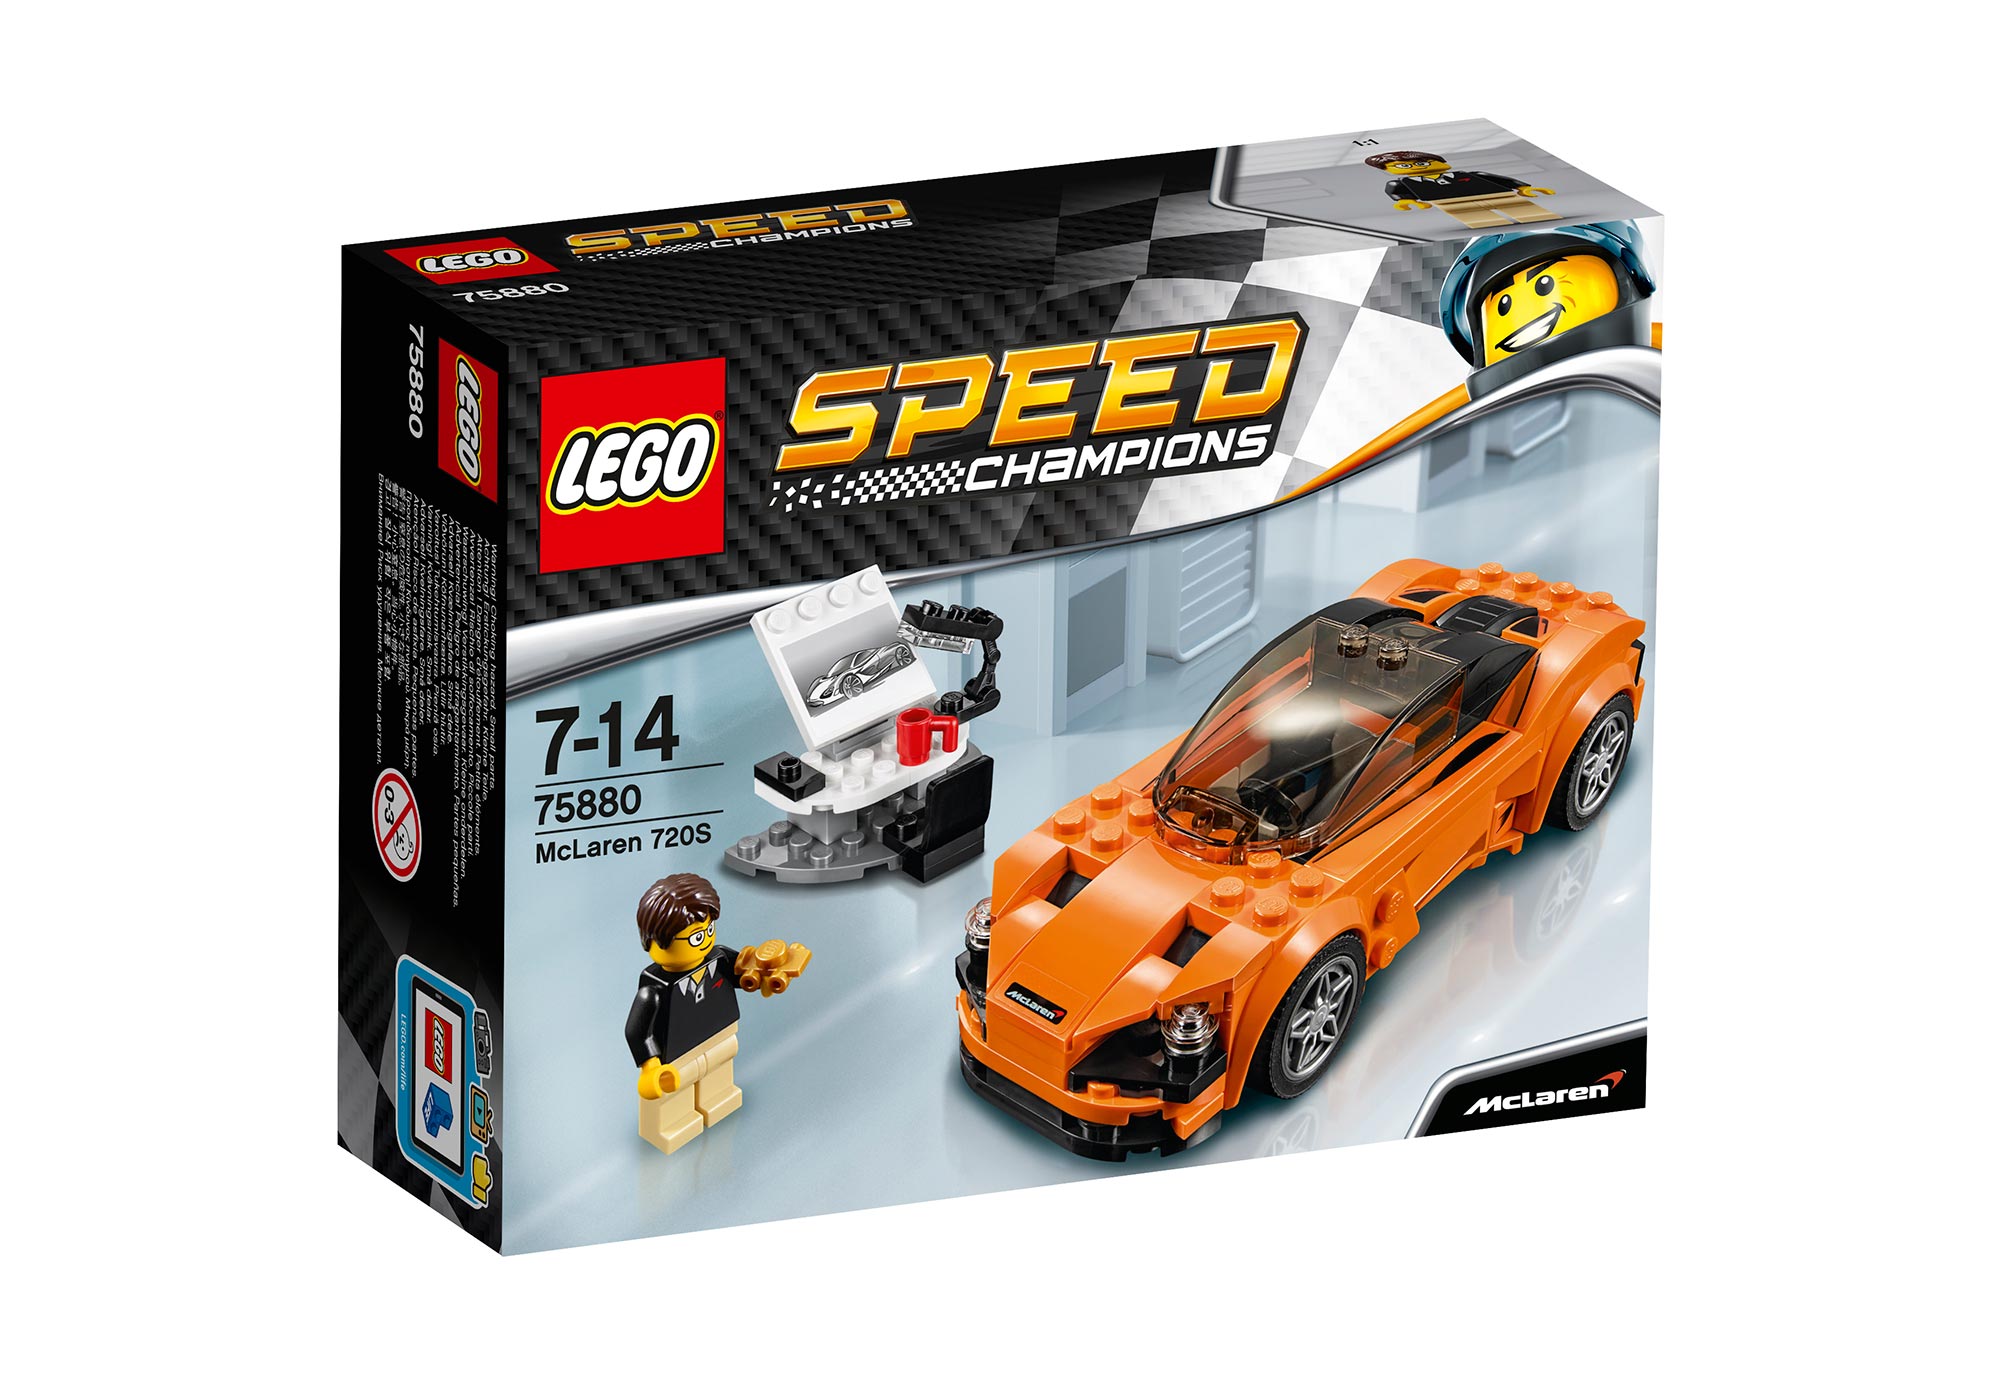 040417_McLaren-LEGO-720S_75880_Box1_v29.jpg